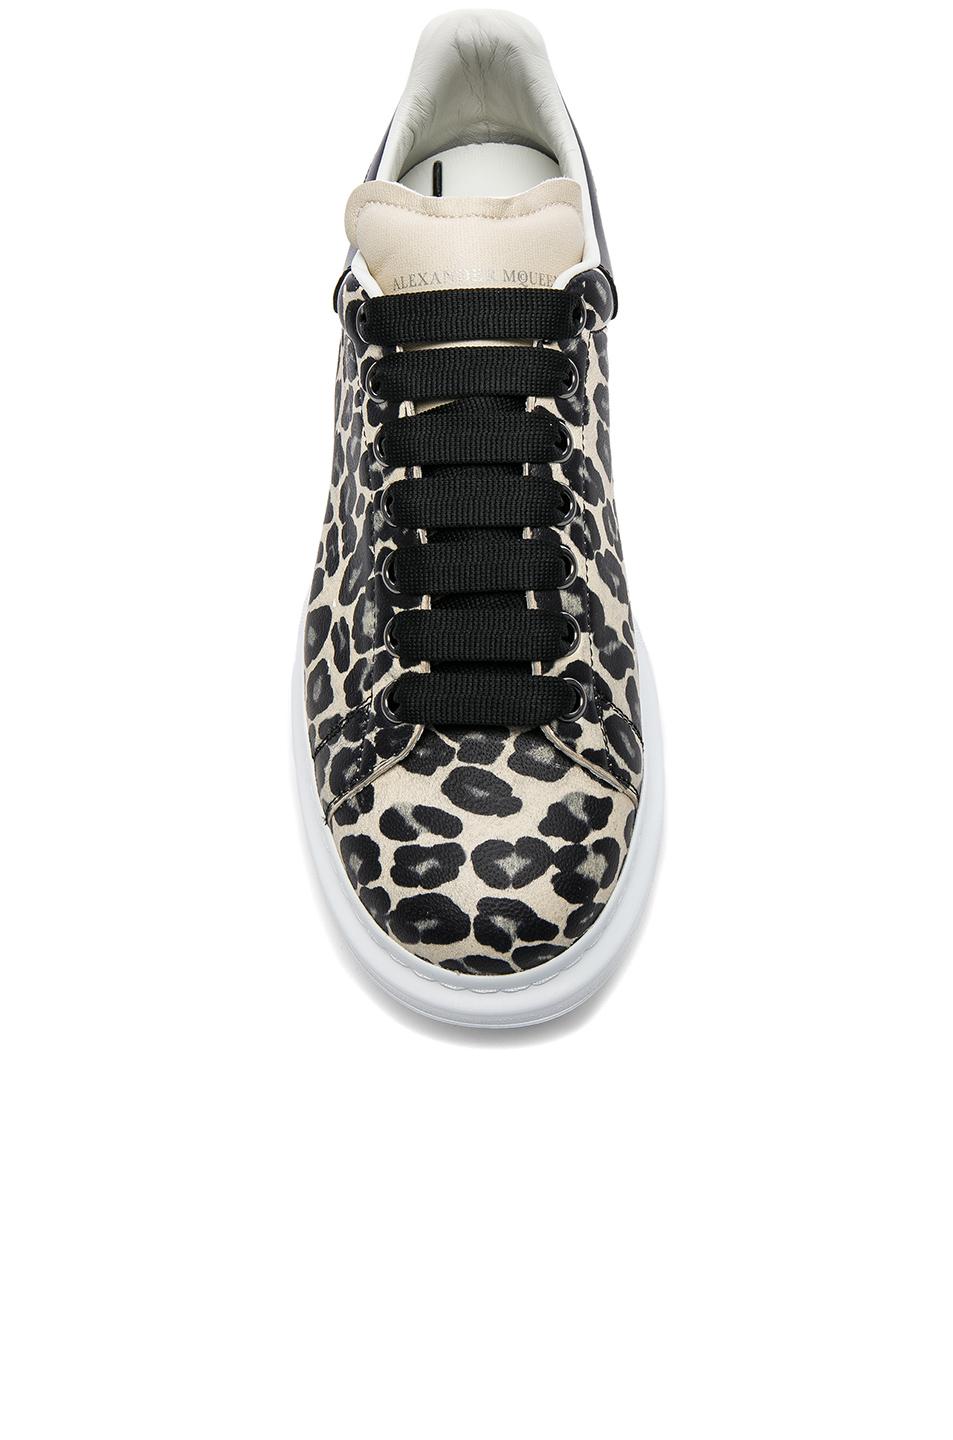 alexander mcqueen leopard shoes